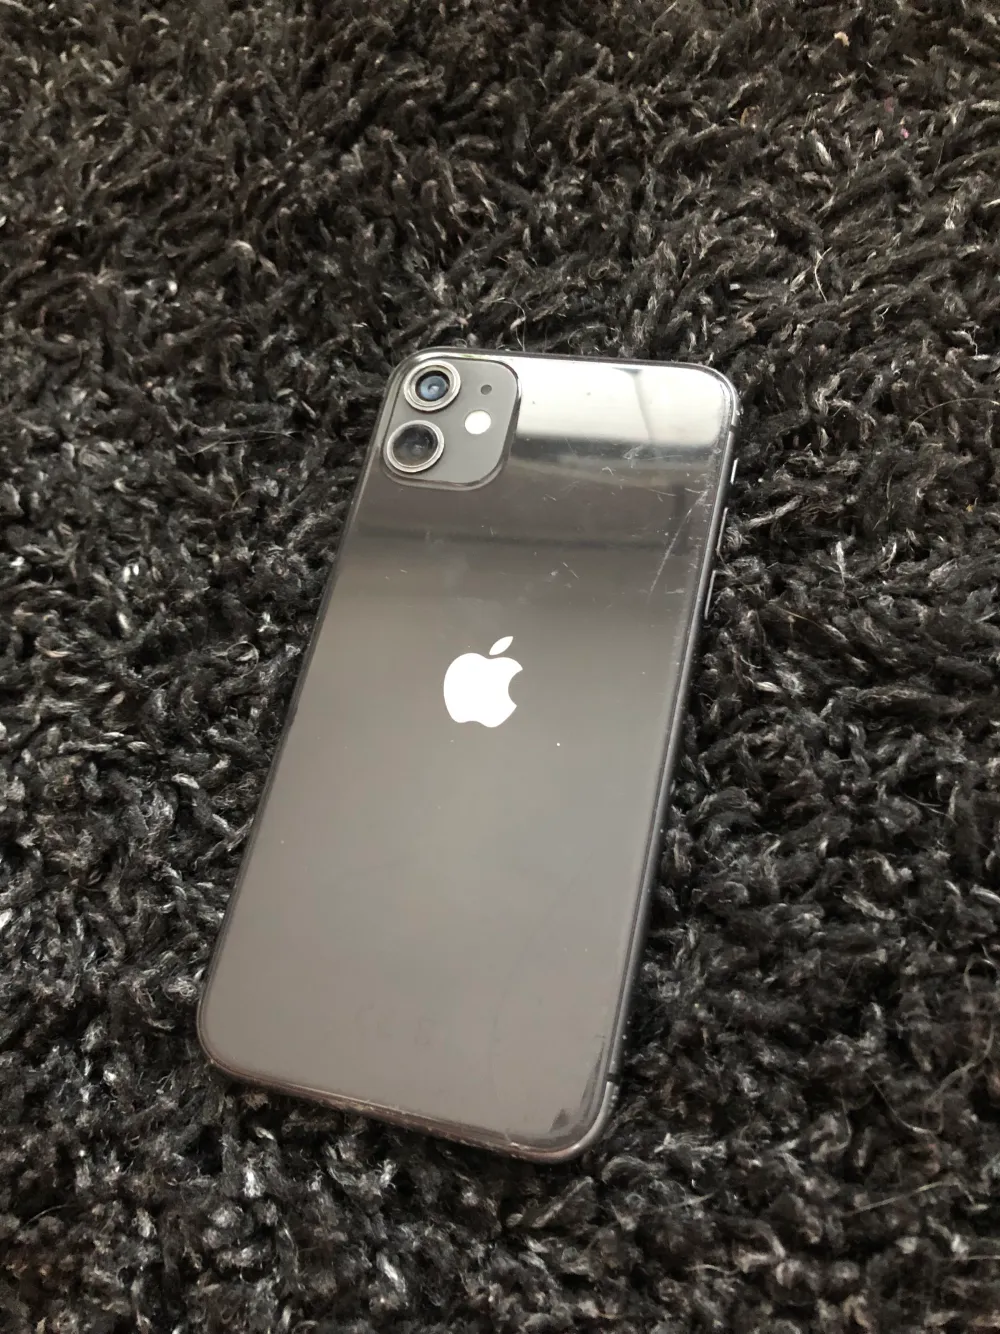 Jag säljer en svart iPhone 11 • 64GB • 81% batteri hälsa • iOS - 16.6 Den funkar som den ska, inget fel på skärmen. En spricka på baksidan, inget som märks. Kameralinsen är borta men inget som störs vad jag har sett. Skal medföljer såklart. Laddare och ka. Övrigt.